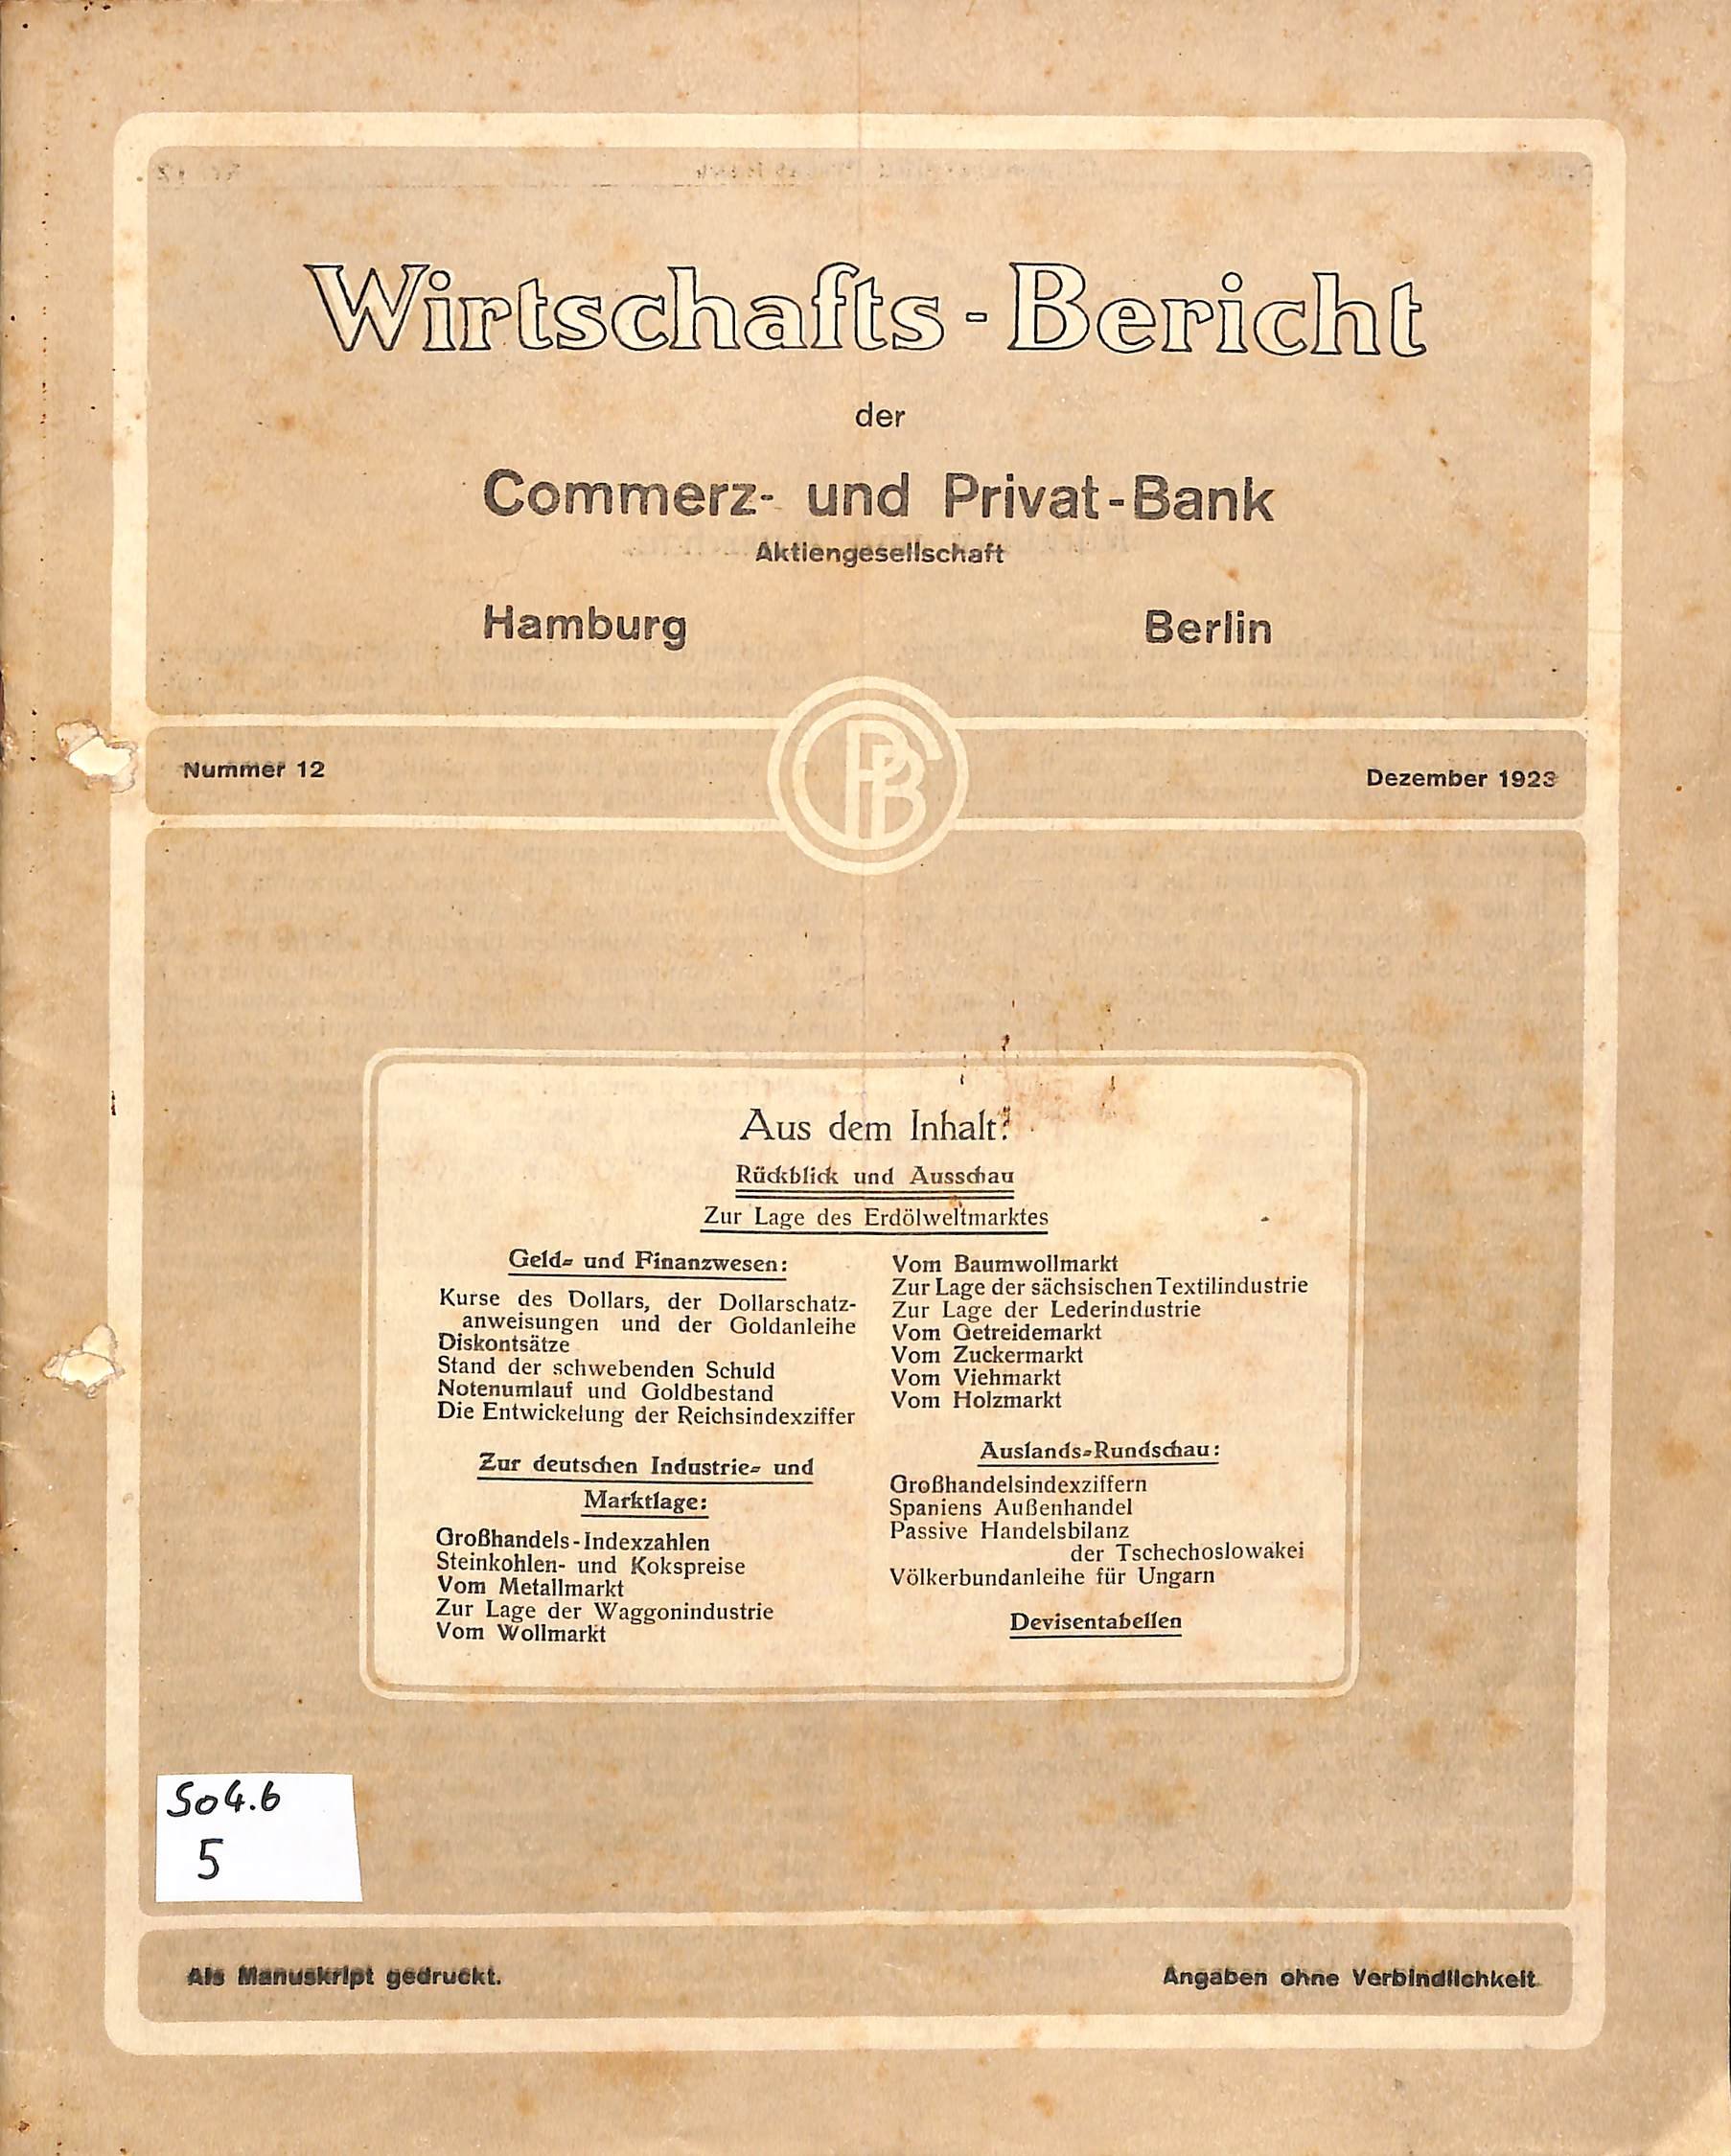 Wirtschafts-Bericht der Commerz- und Privatbank AG Hamburg - Berlin 1923 (Heimatwelten Zwönitz CC BY-NC-SA)